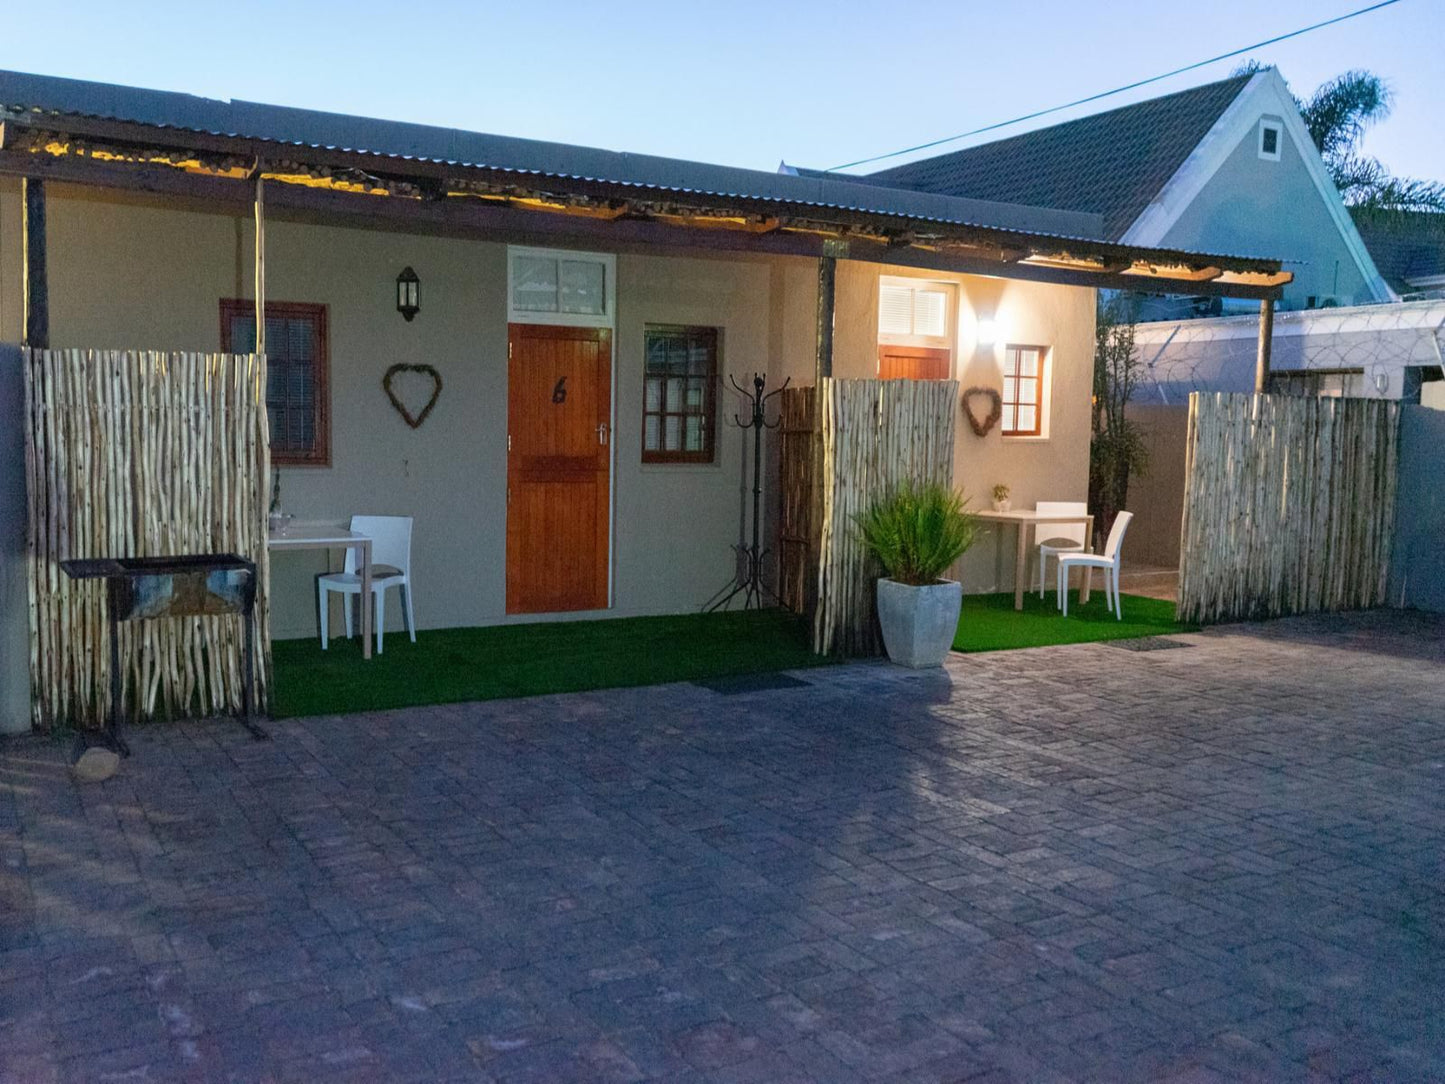 De Akker Guest House Oudtshoorn Western Cape South Africa House, Building, Architecture